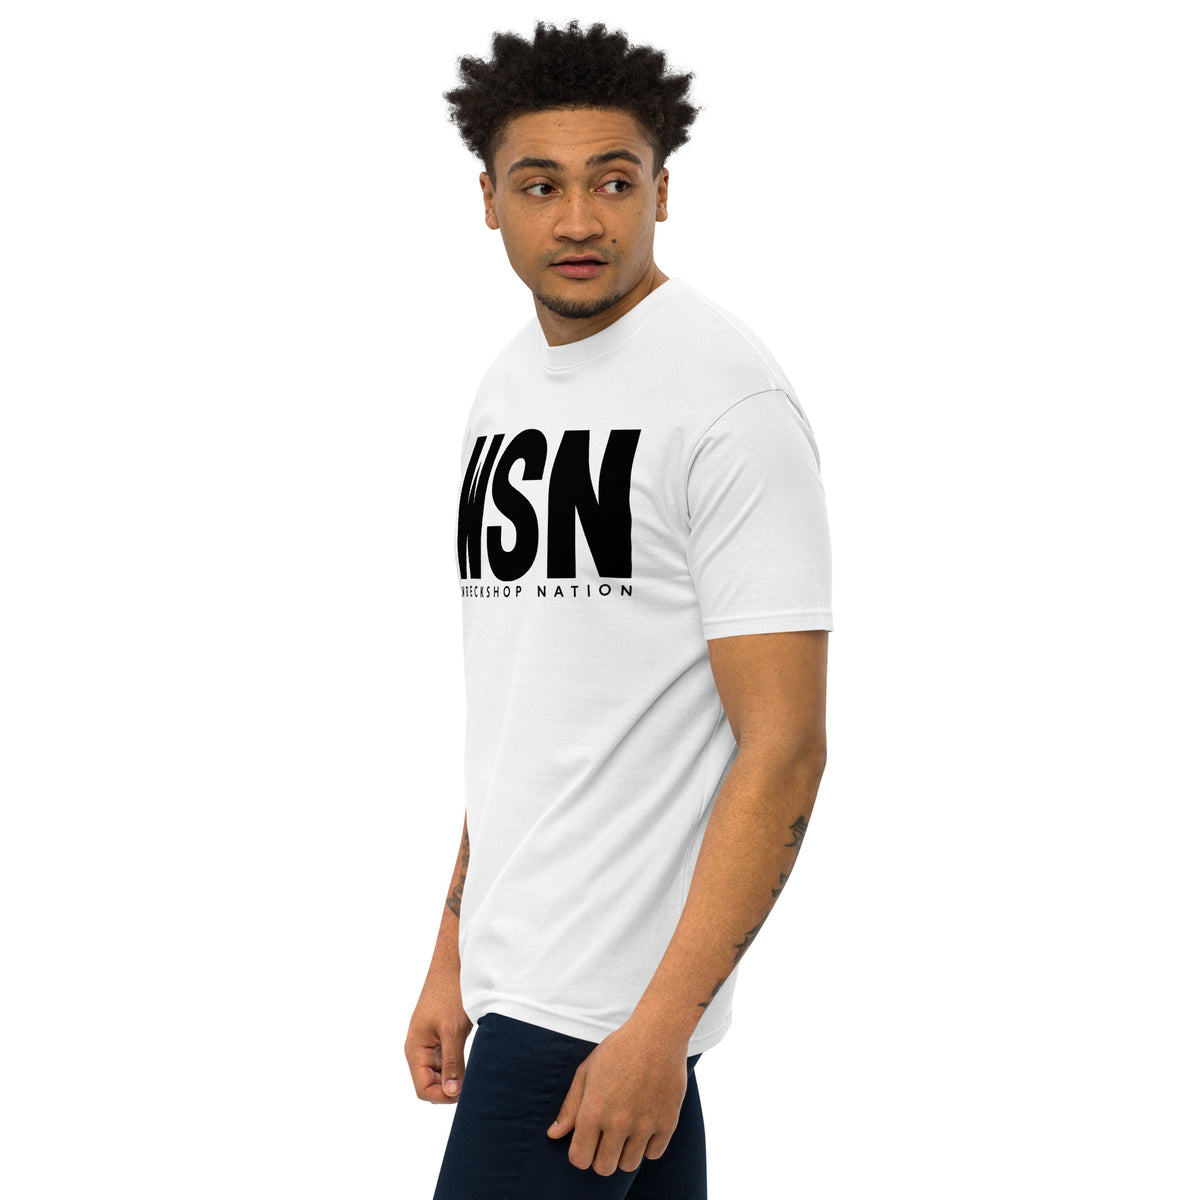 Men’s premium White Wreckshop Nation T-Shirt